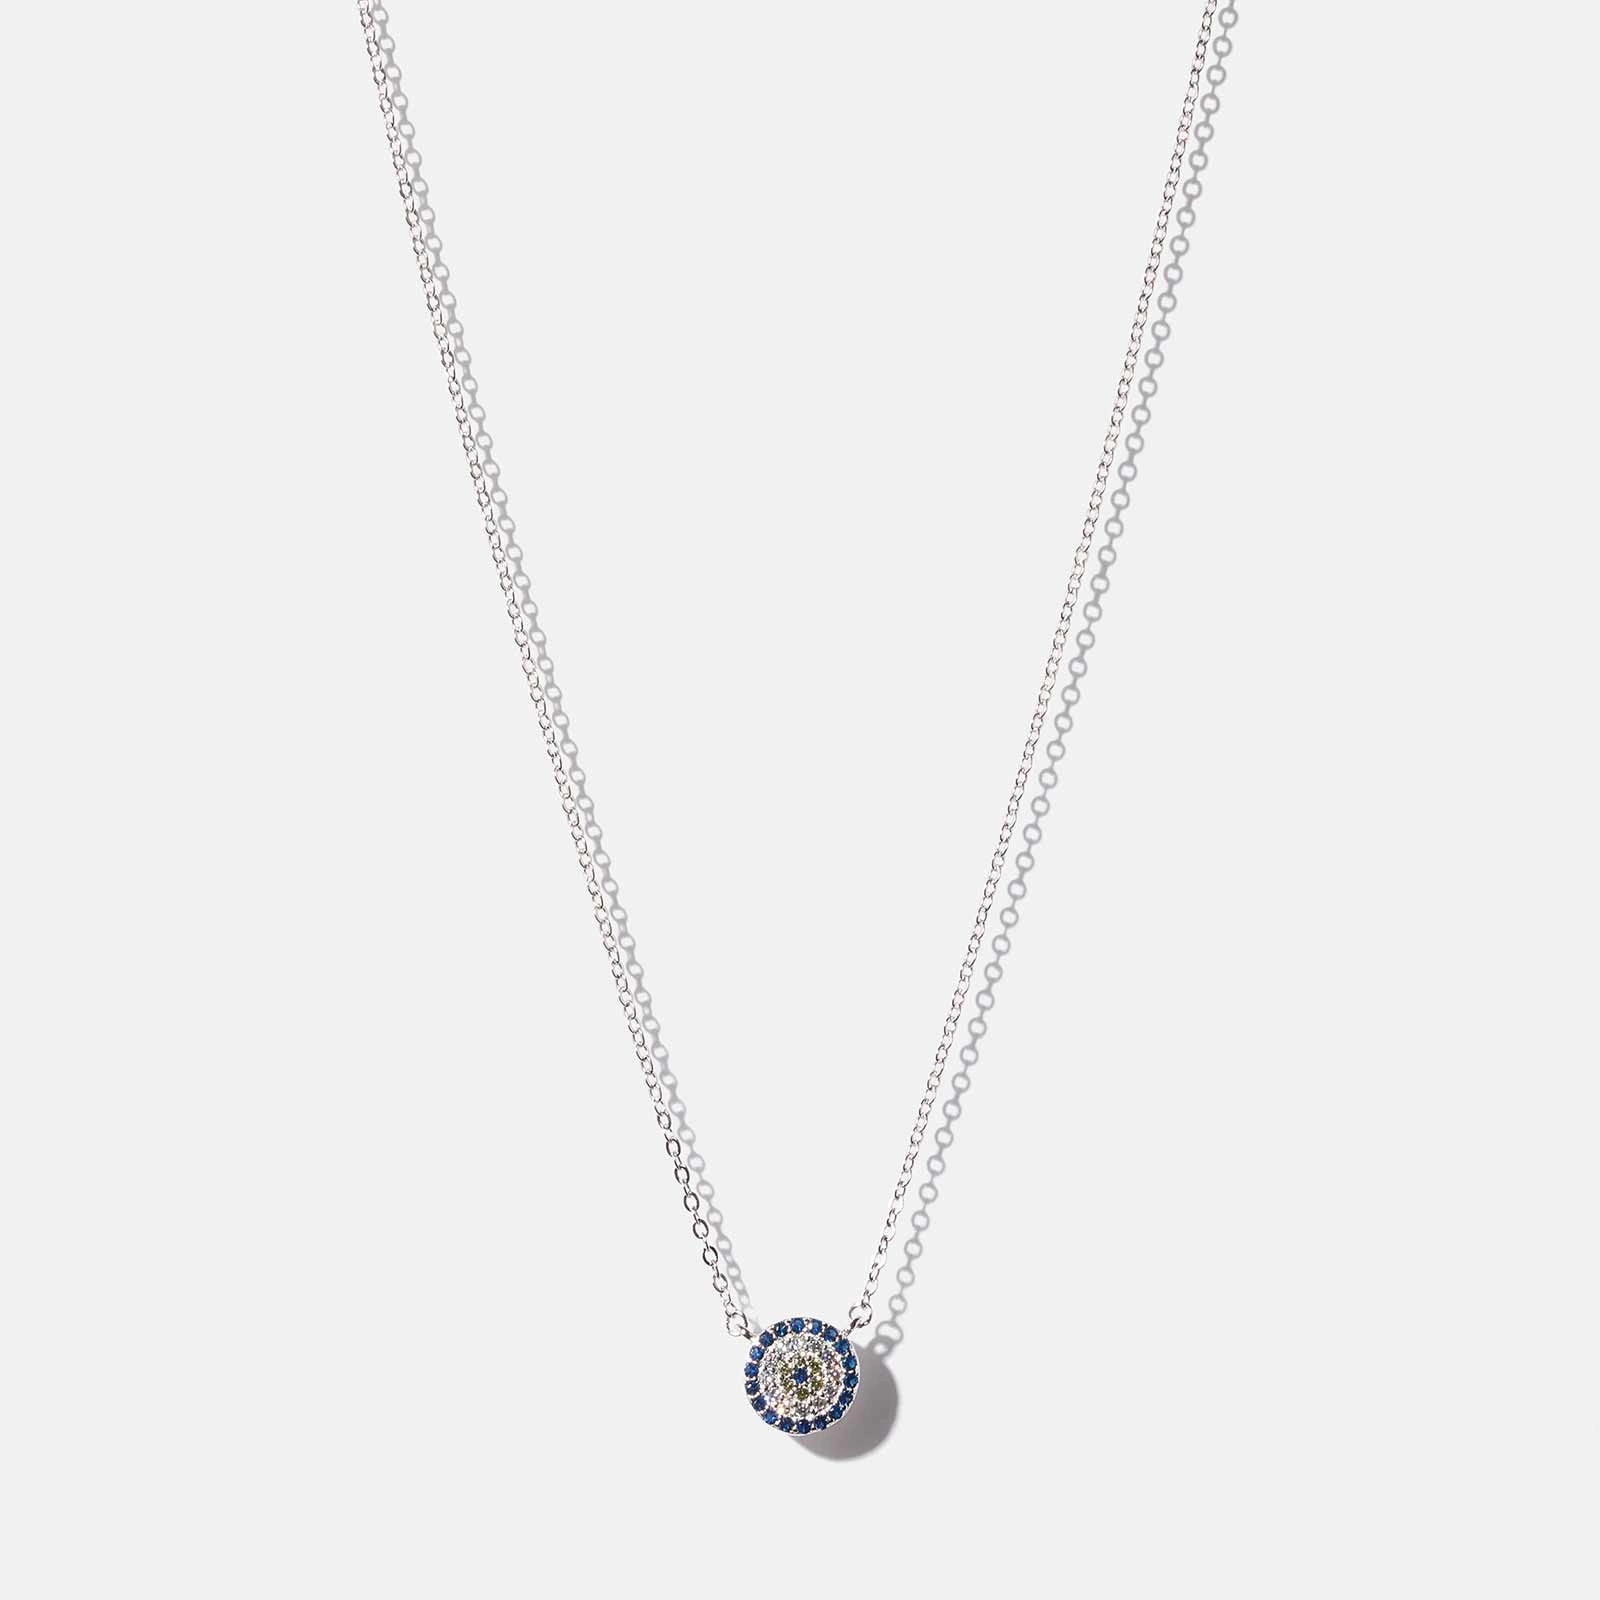 Halsband i äkta silver - berlock, blå/vita stenar 40+5cm